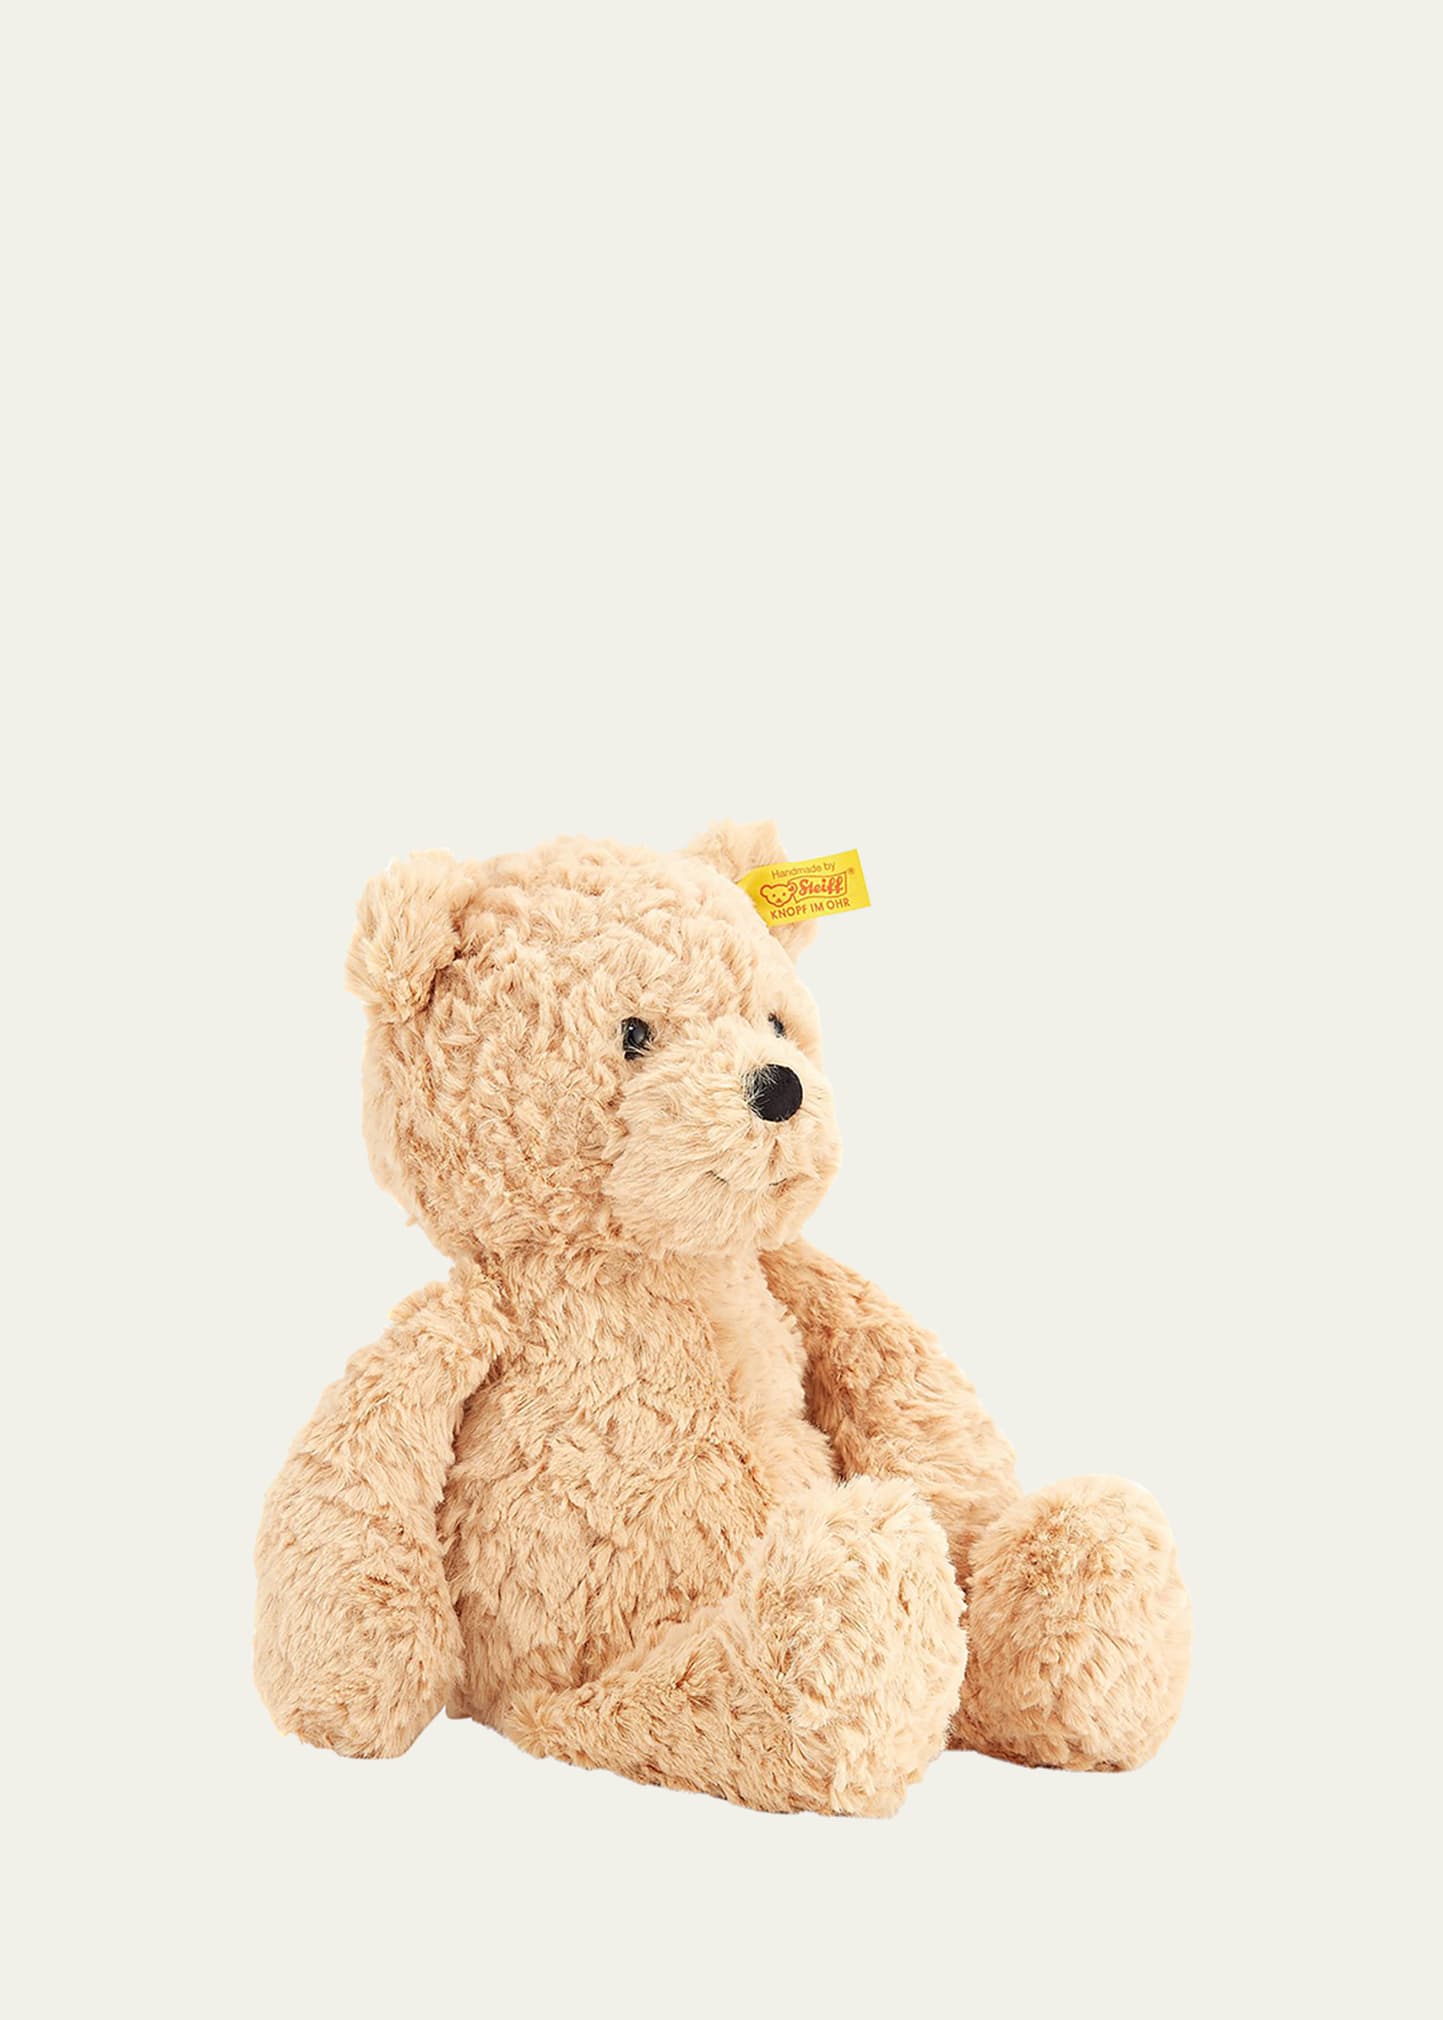 Jimmy Steiff Teddy bear 40 cm